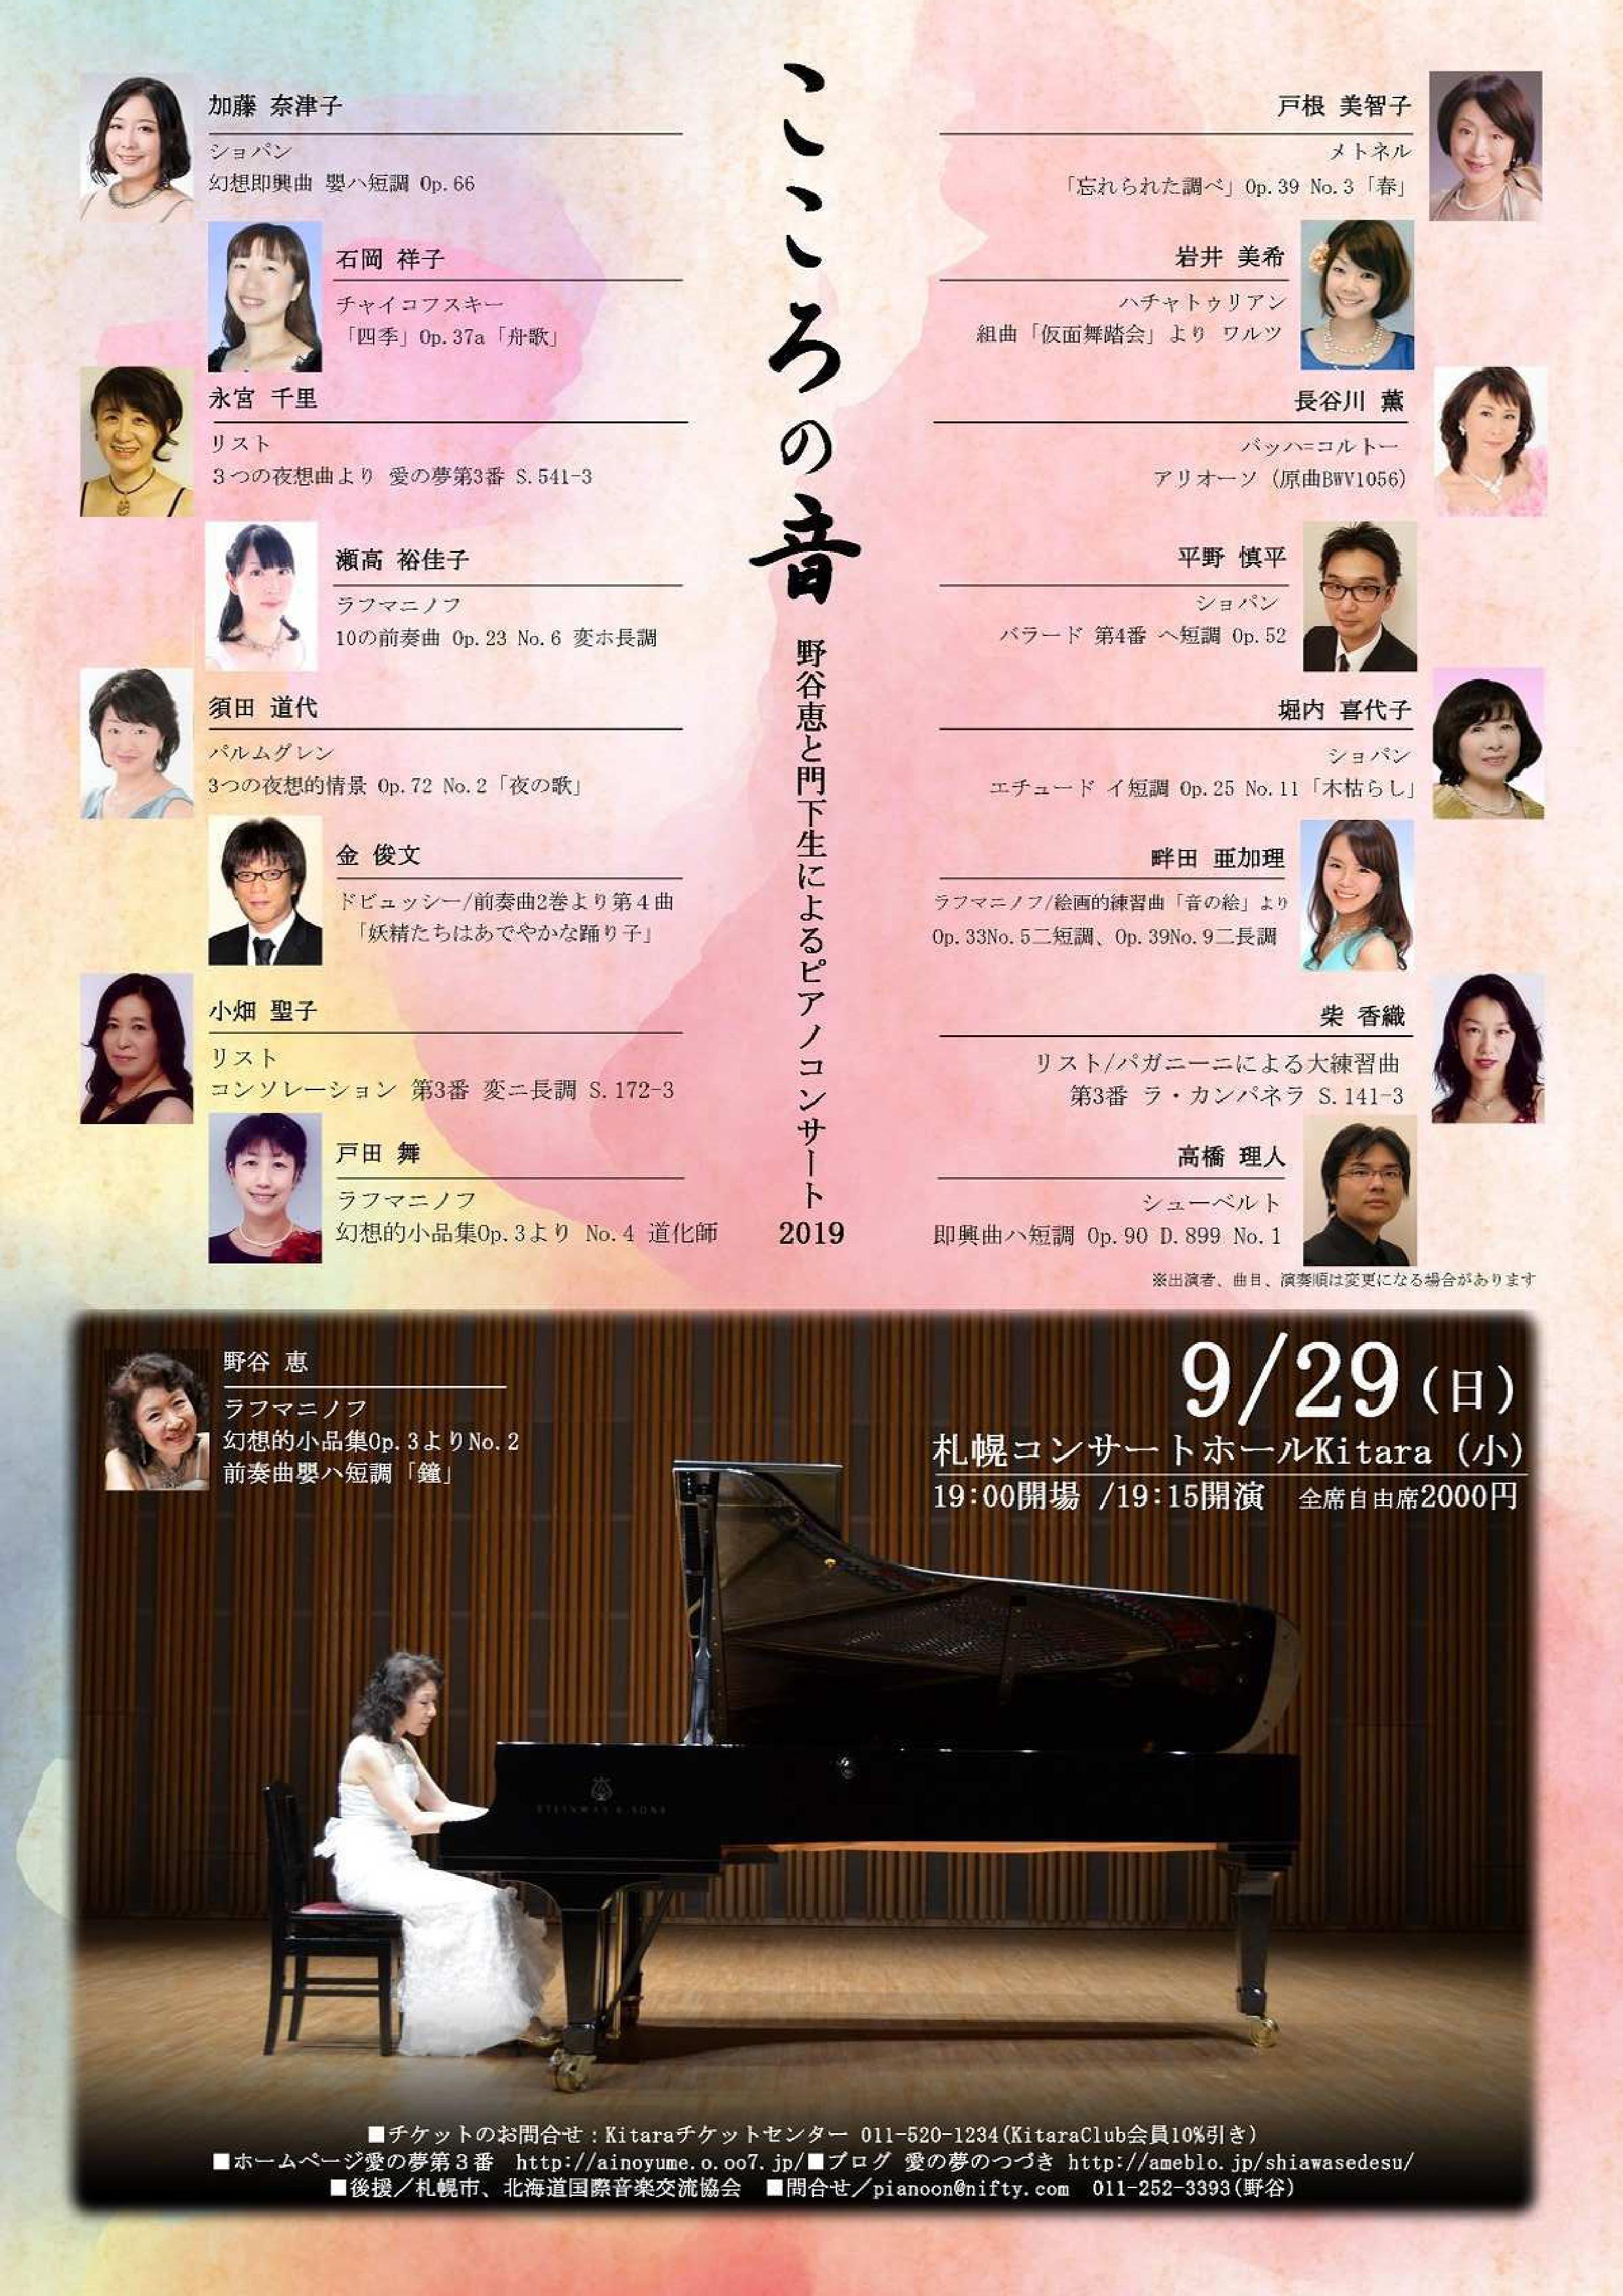 野谷恵様と門下生のコンサートが札幌で開催されます